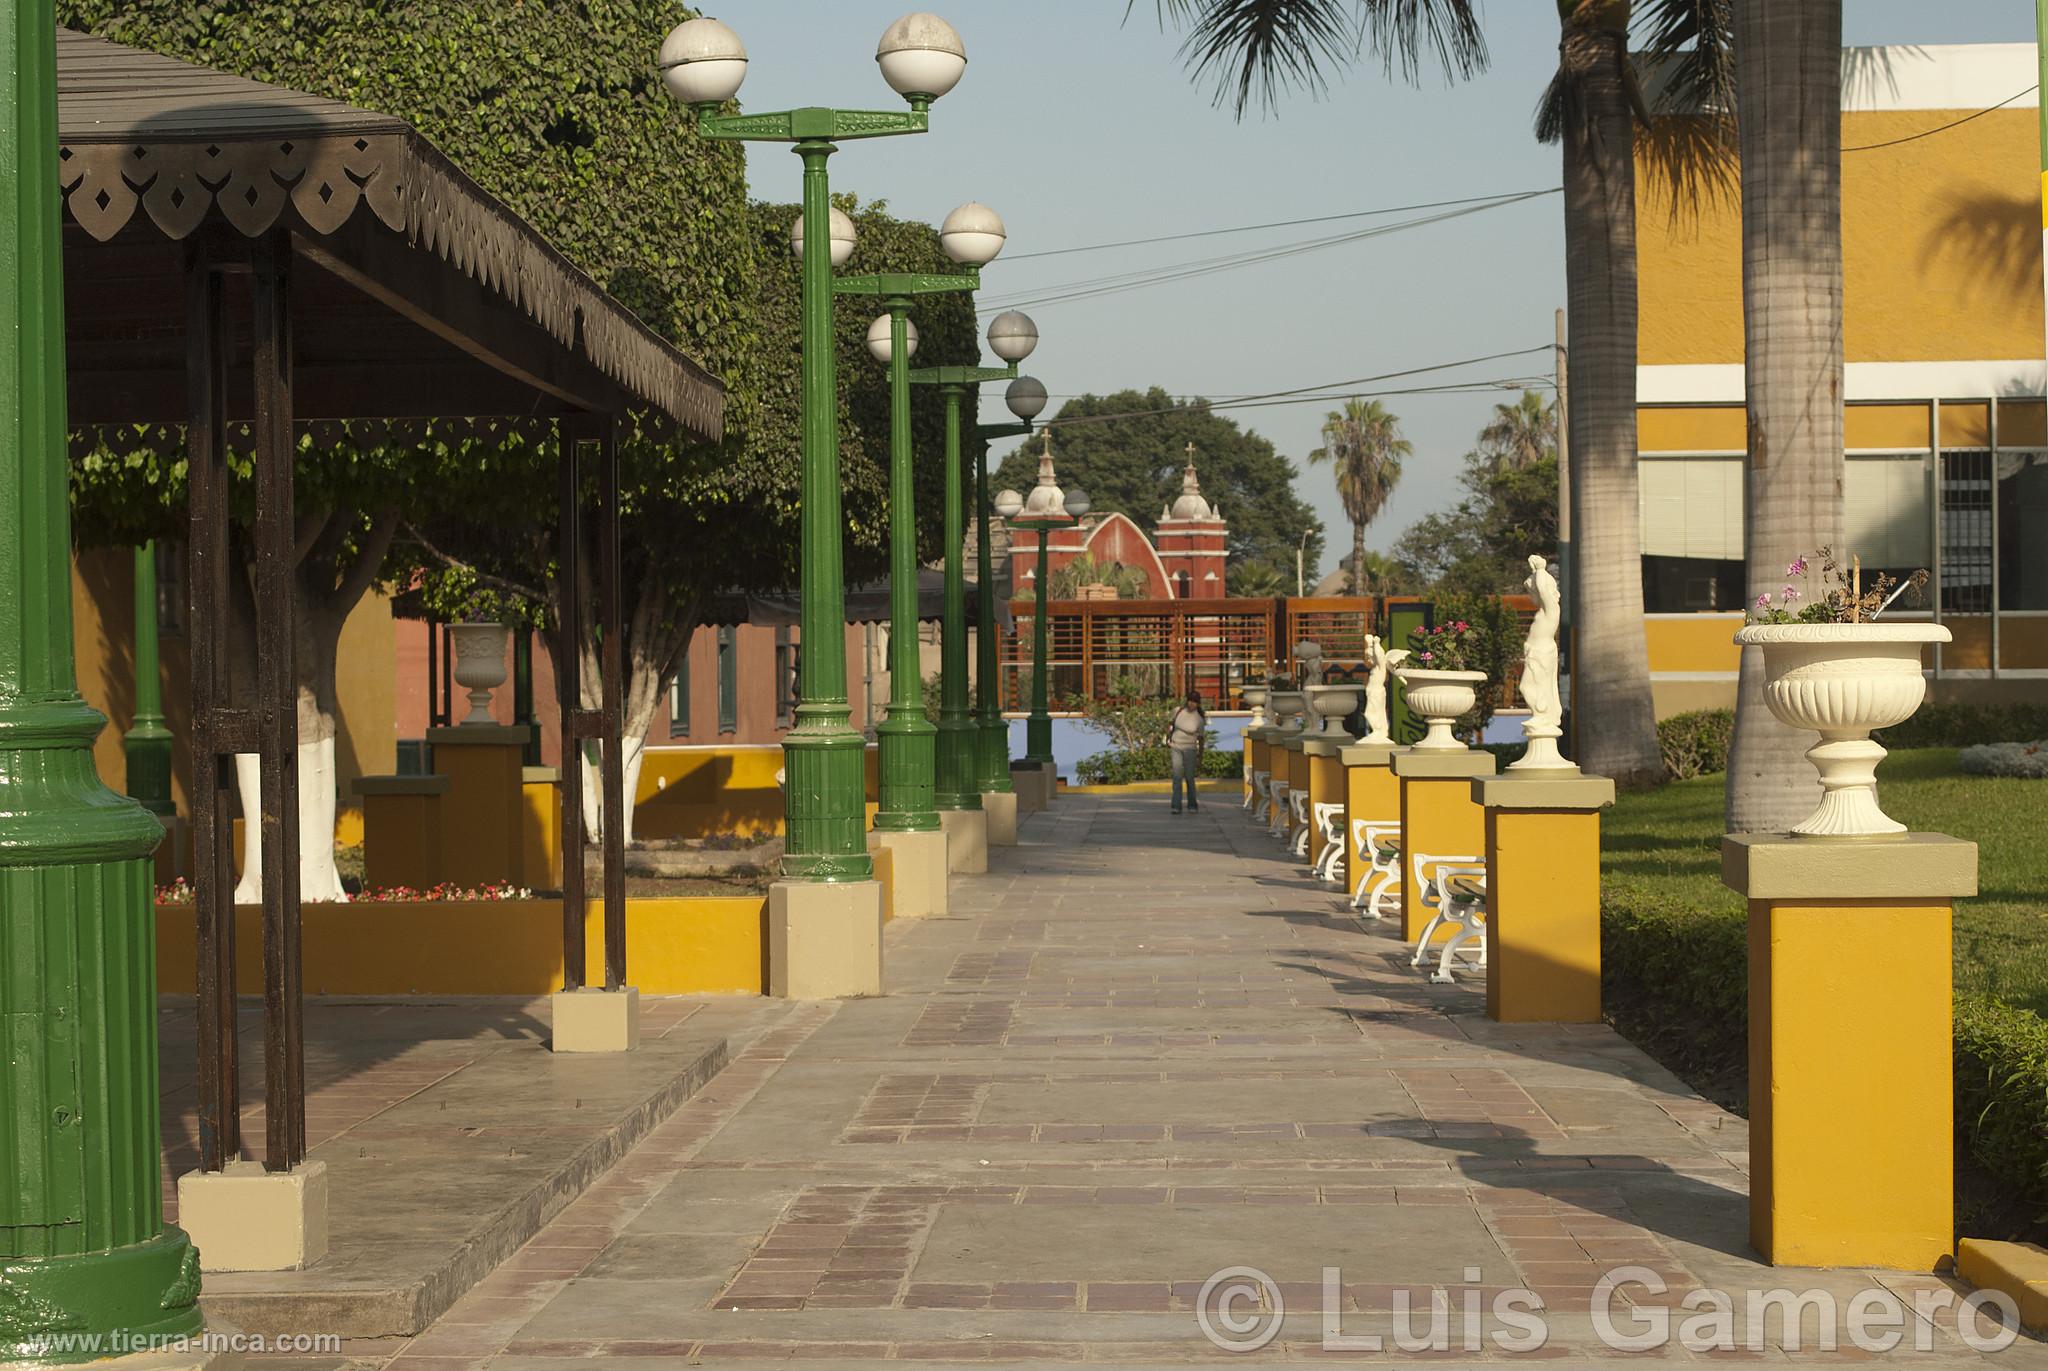 Calles de Barranco, Lima